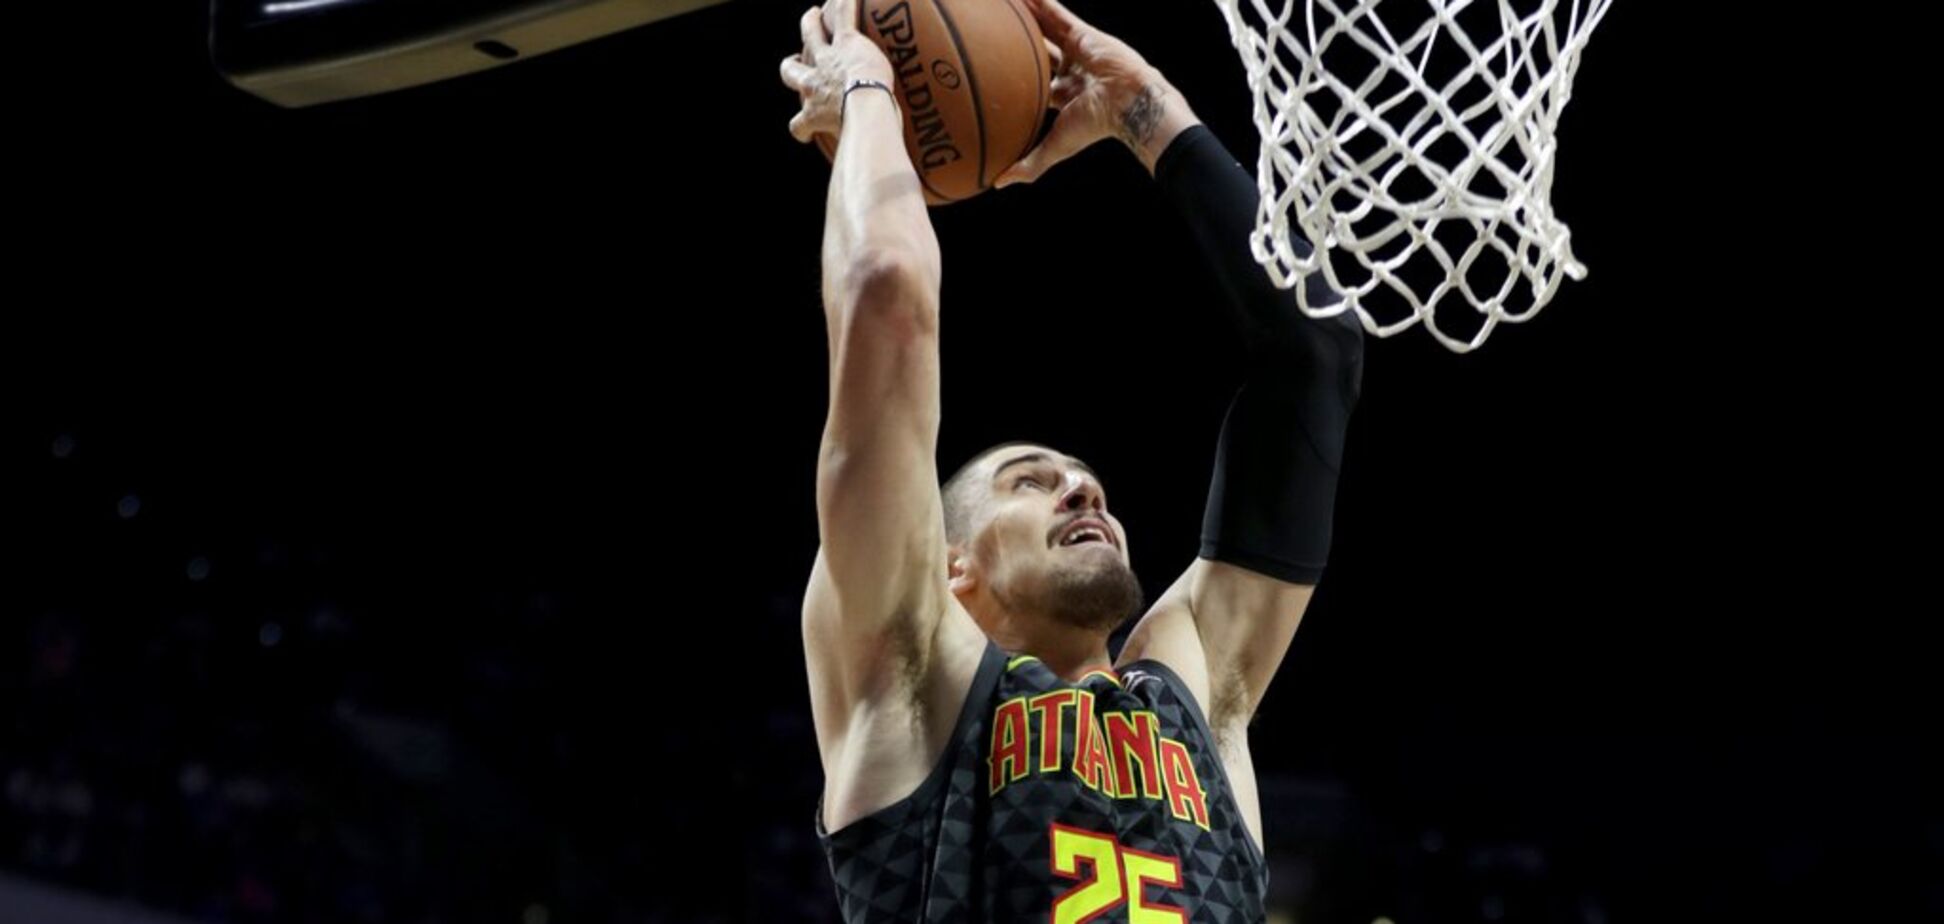 Феноменально: украинец Лэнь выдал потрясающий матч в НБА